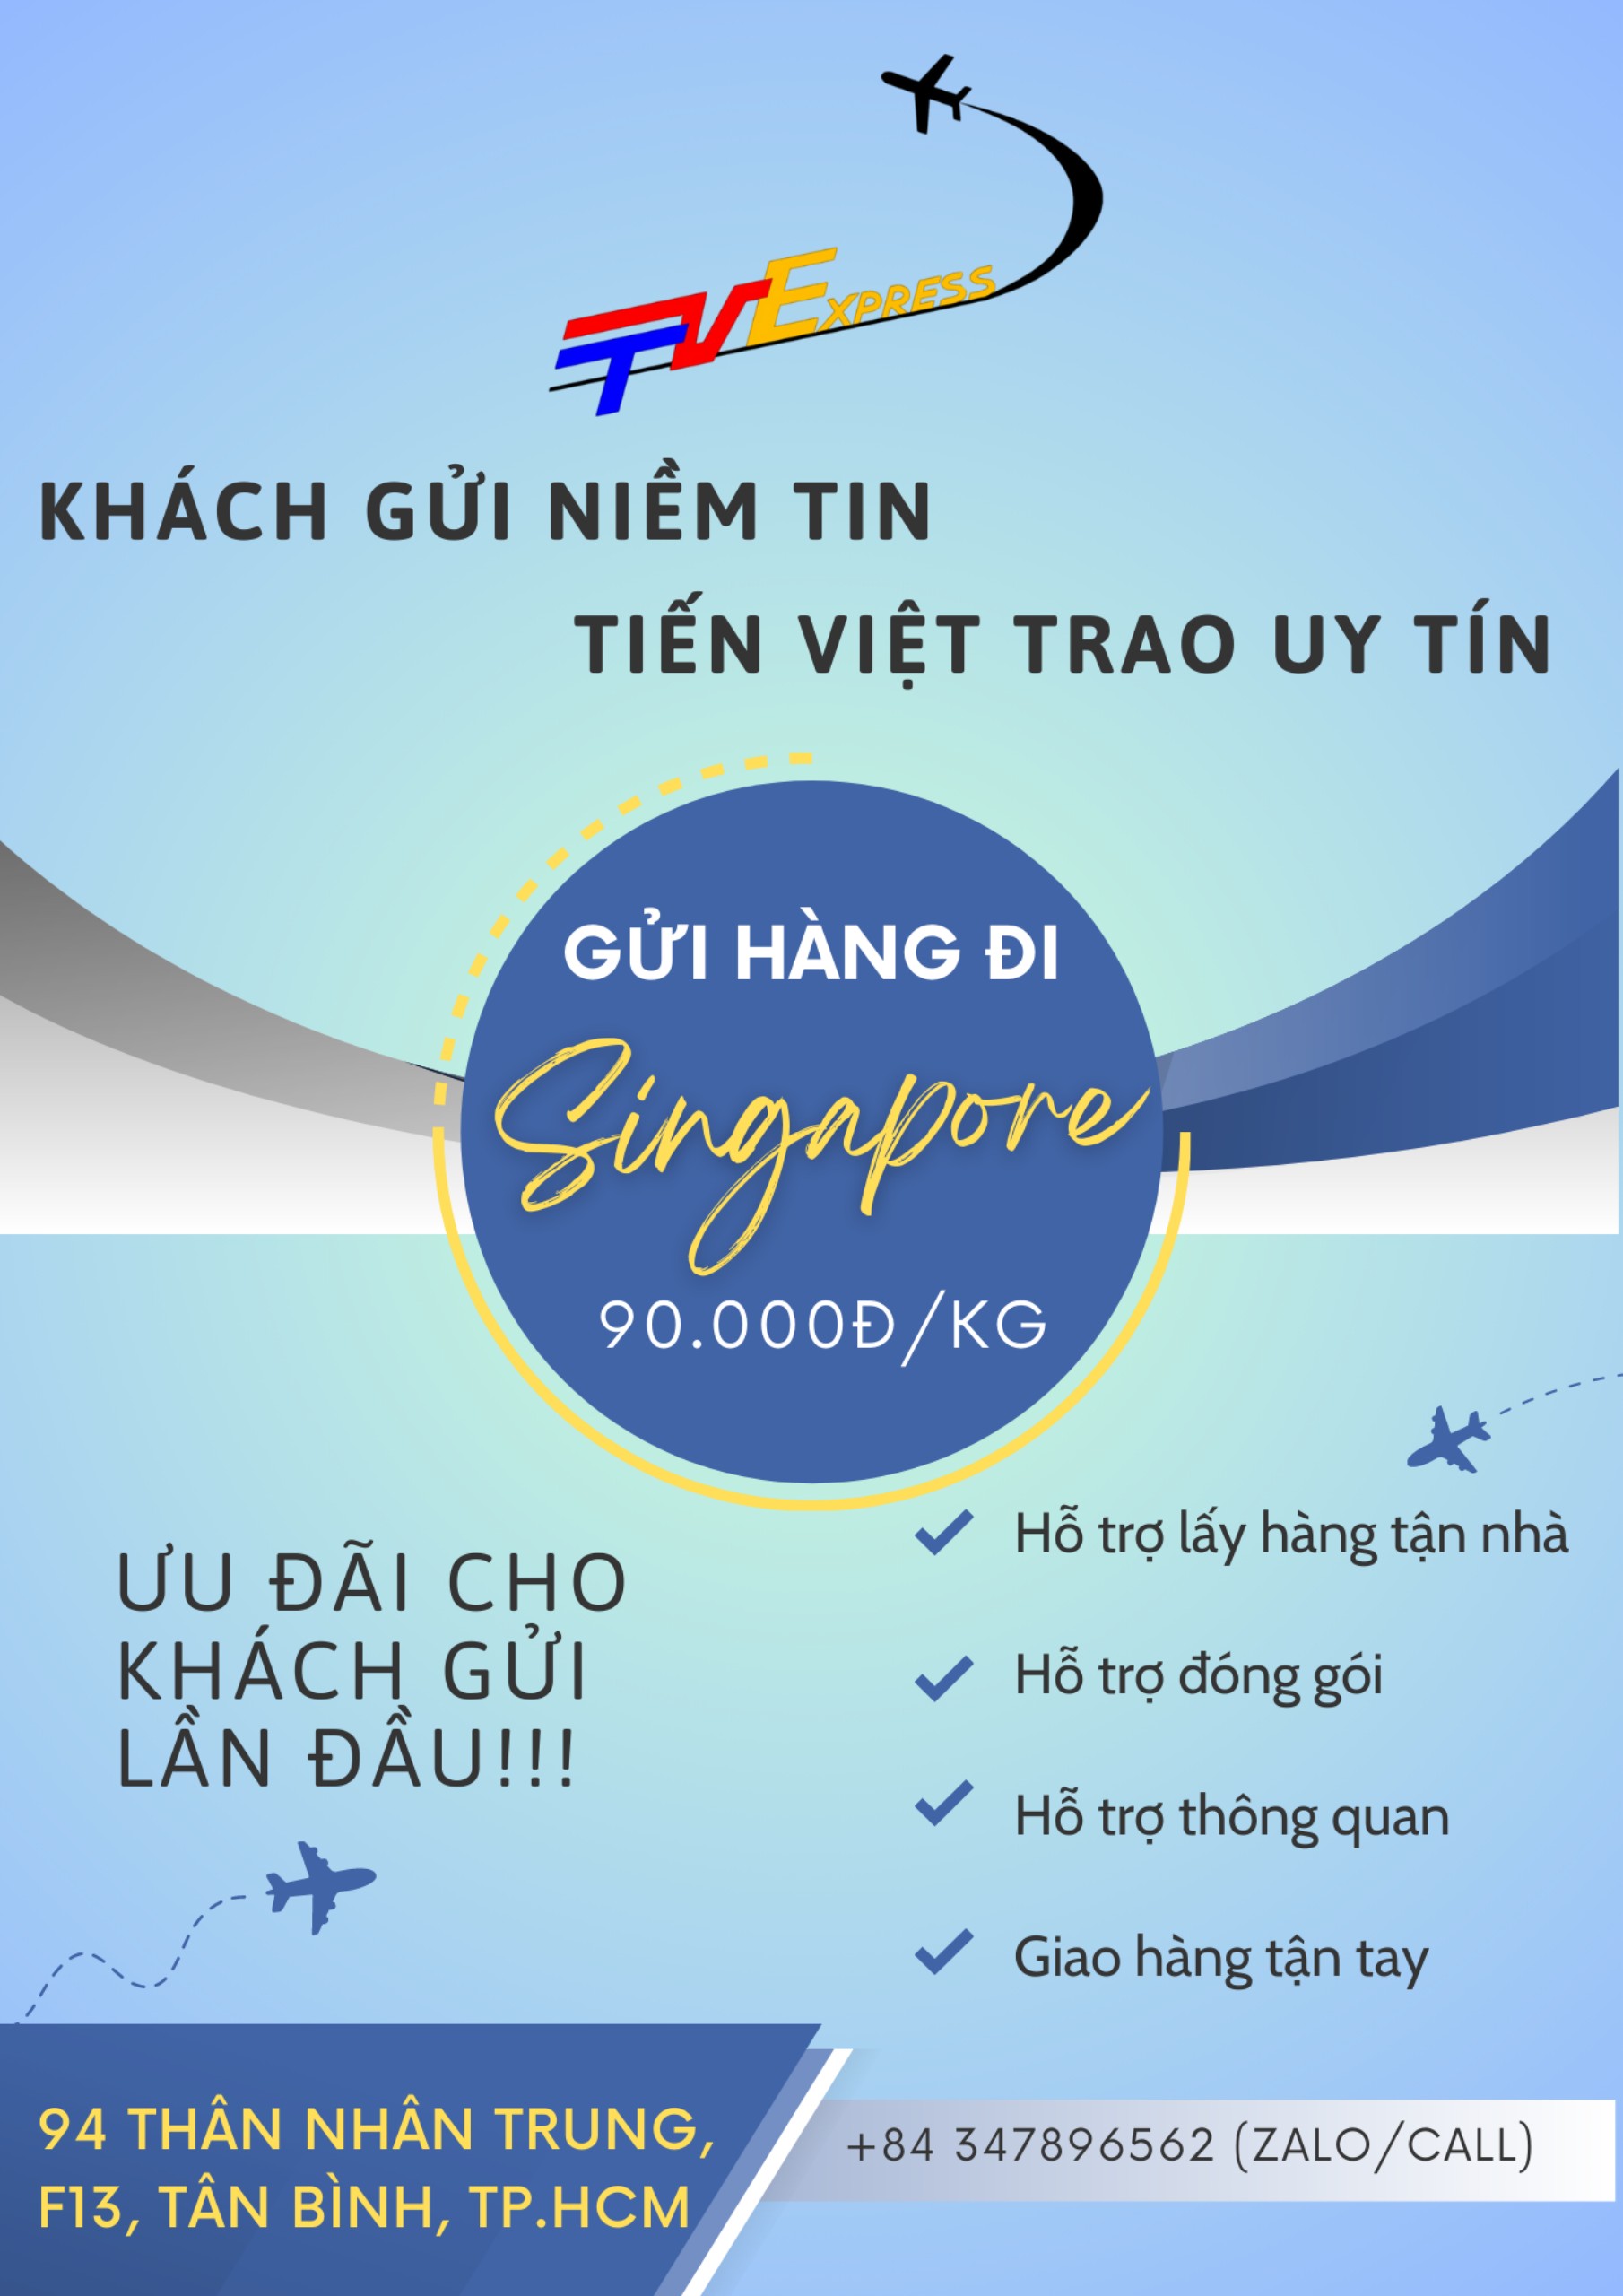 Gửi hàng đi Singapore giá rẻ - Tiến Việt Express